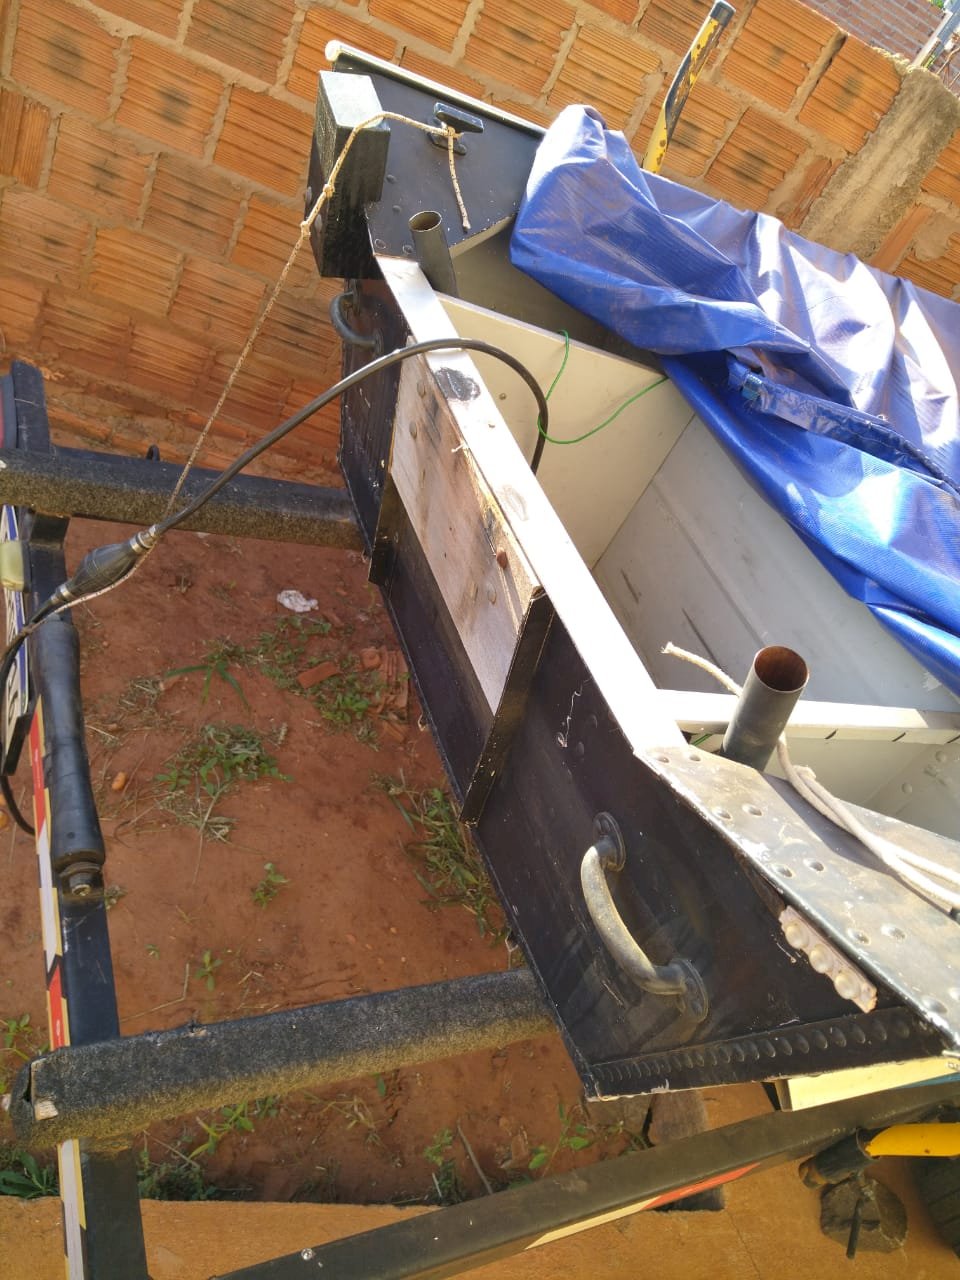 IVINHEMA - Motor de barco e tanque de combustível foi furtado em residência no bairro Vitória.